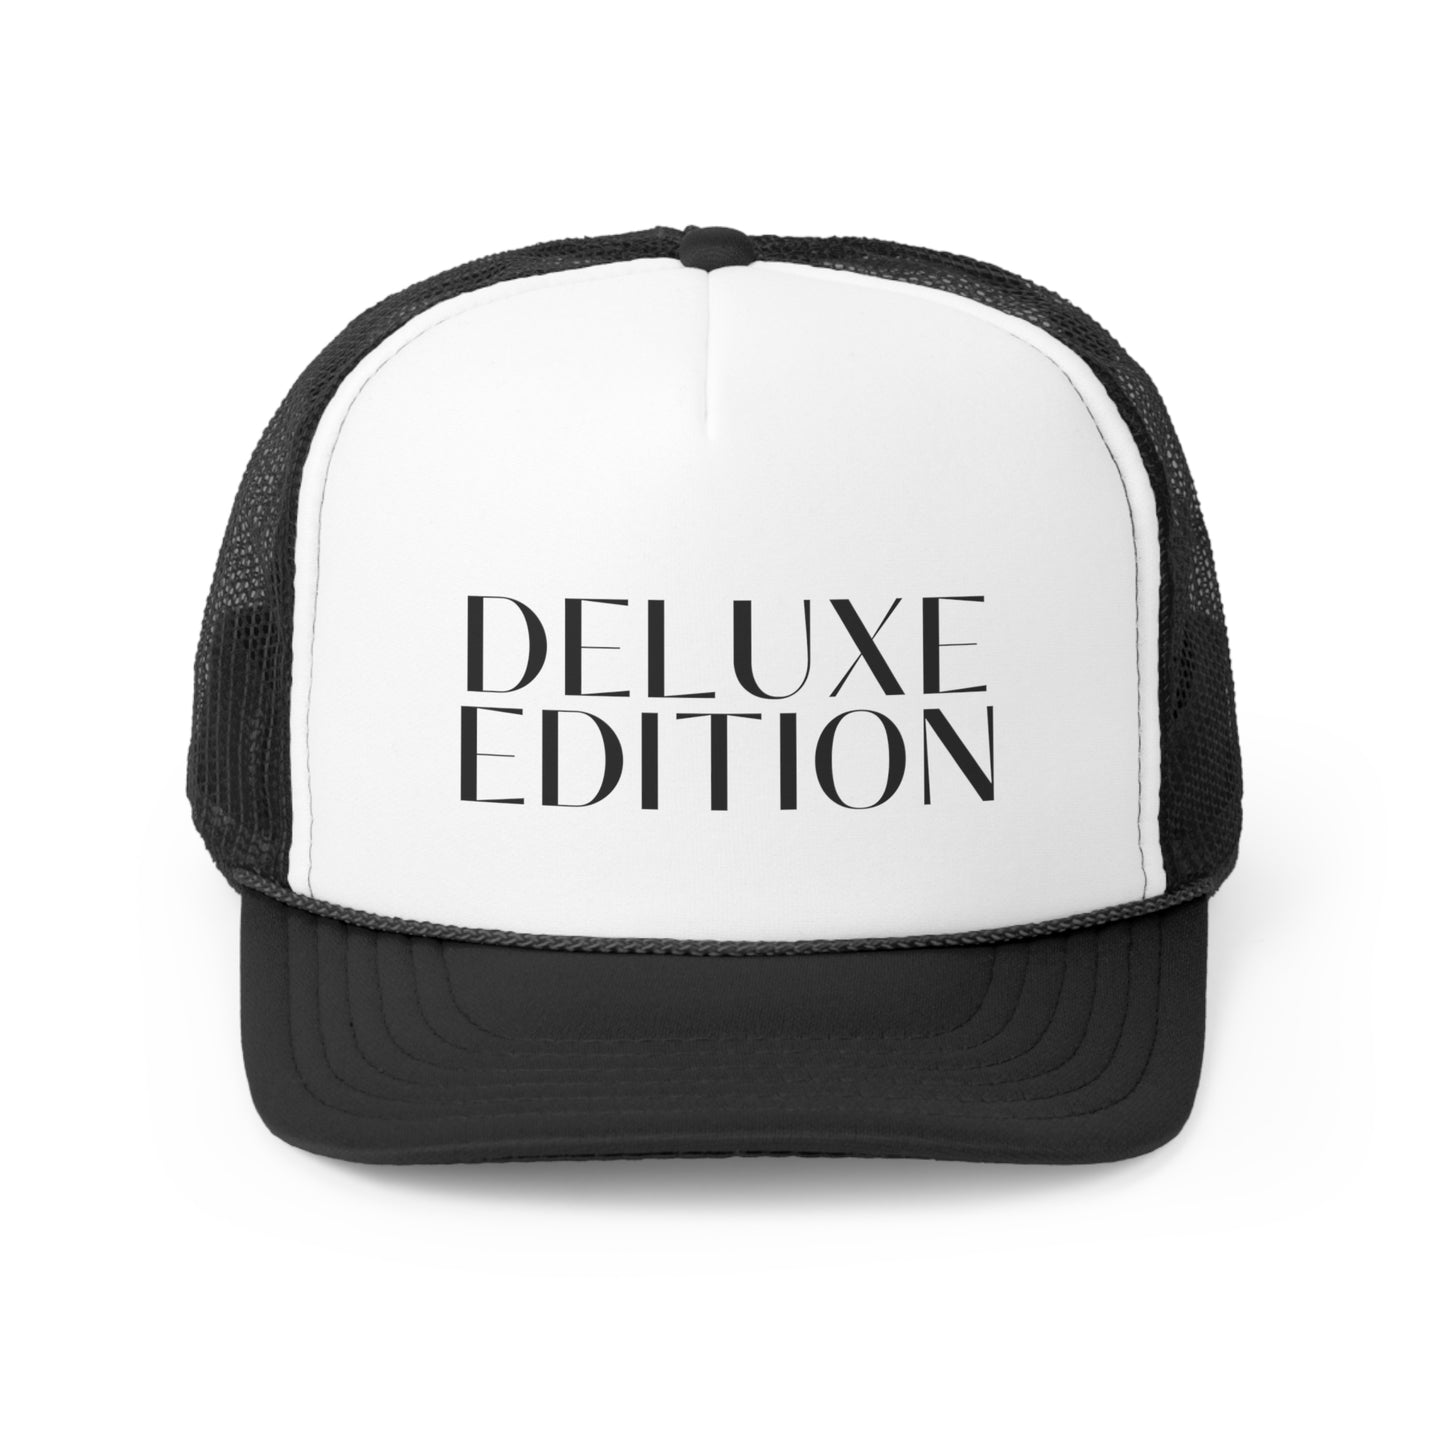 Deluxe Edition Trucker Cap